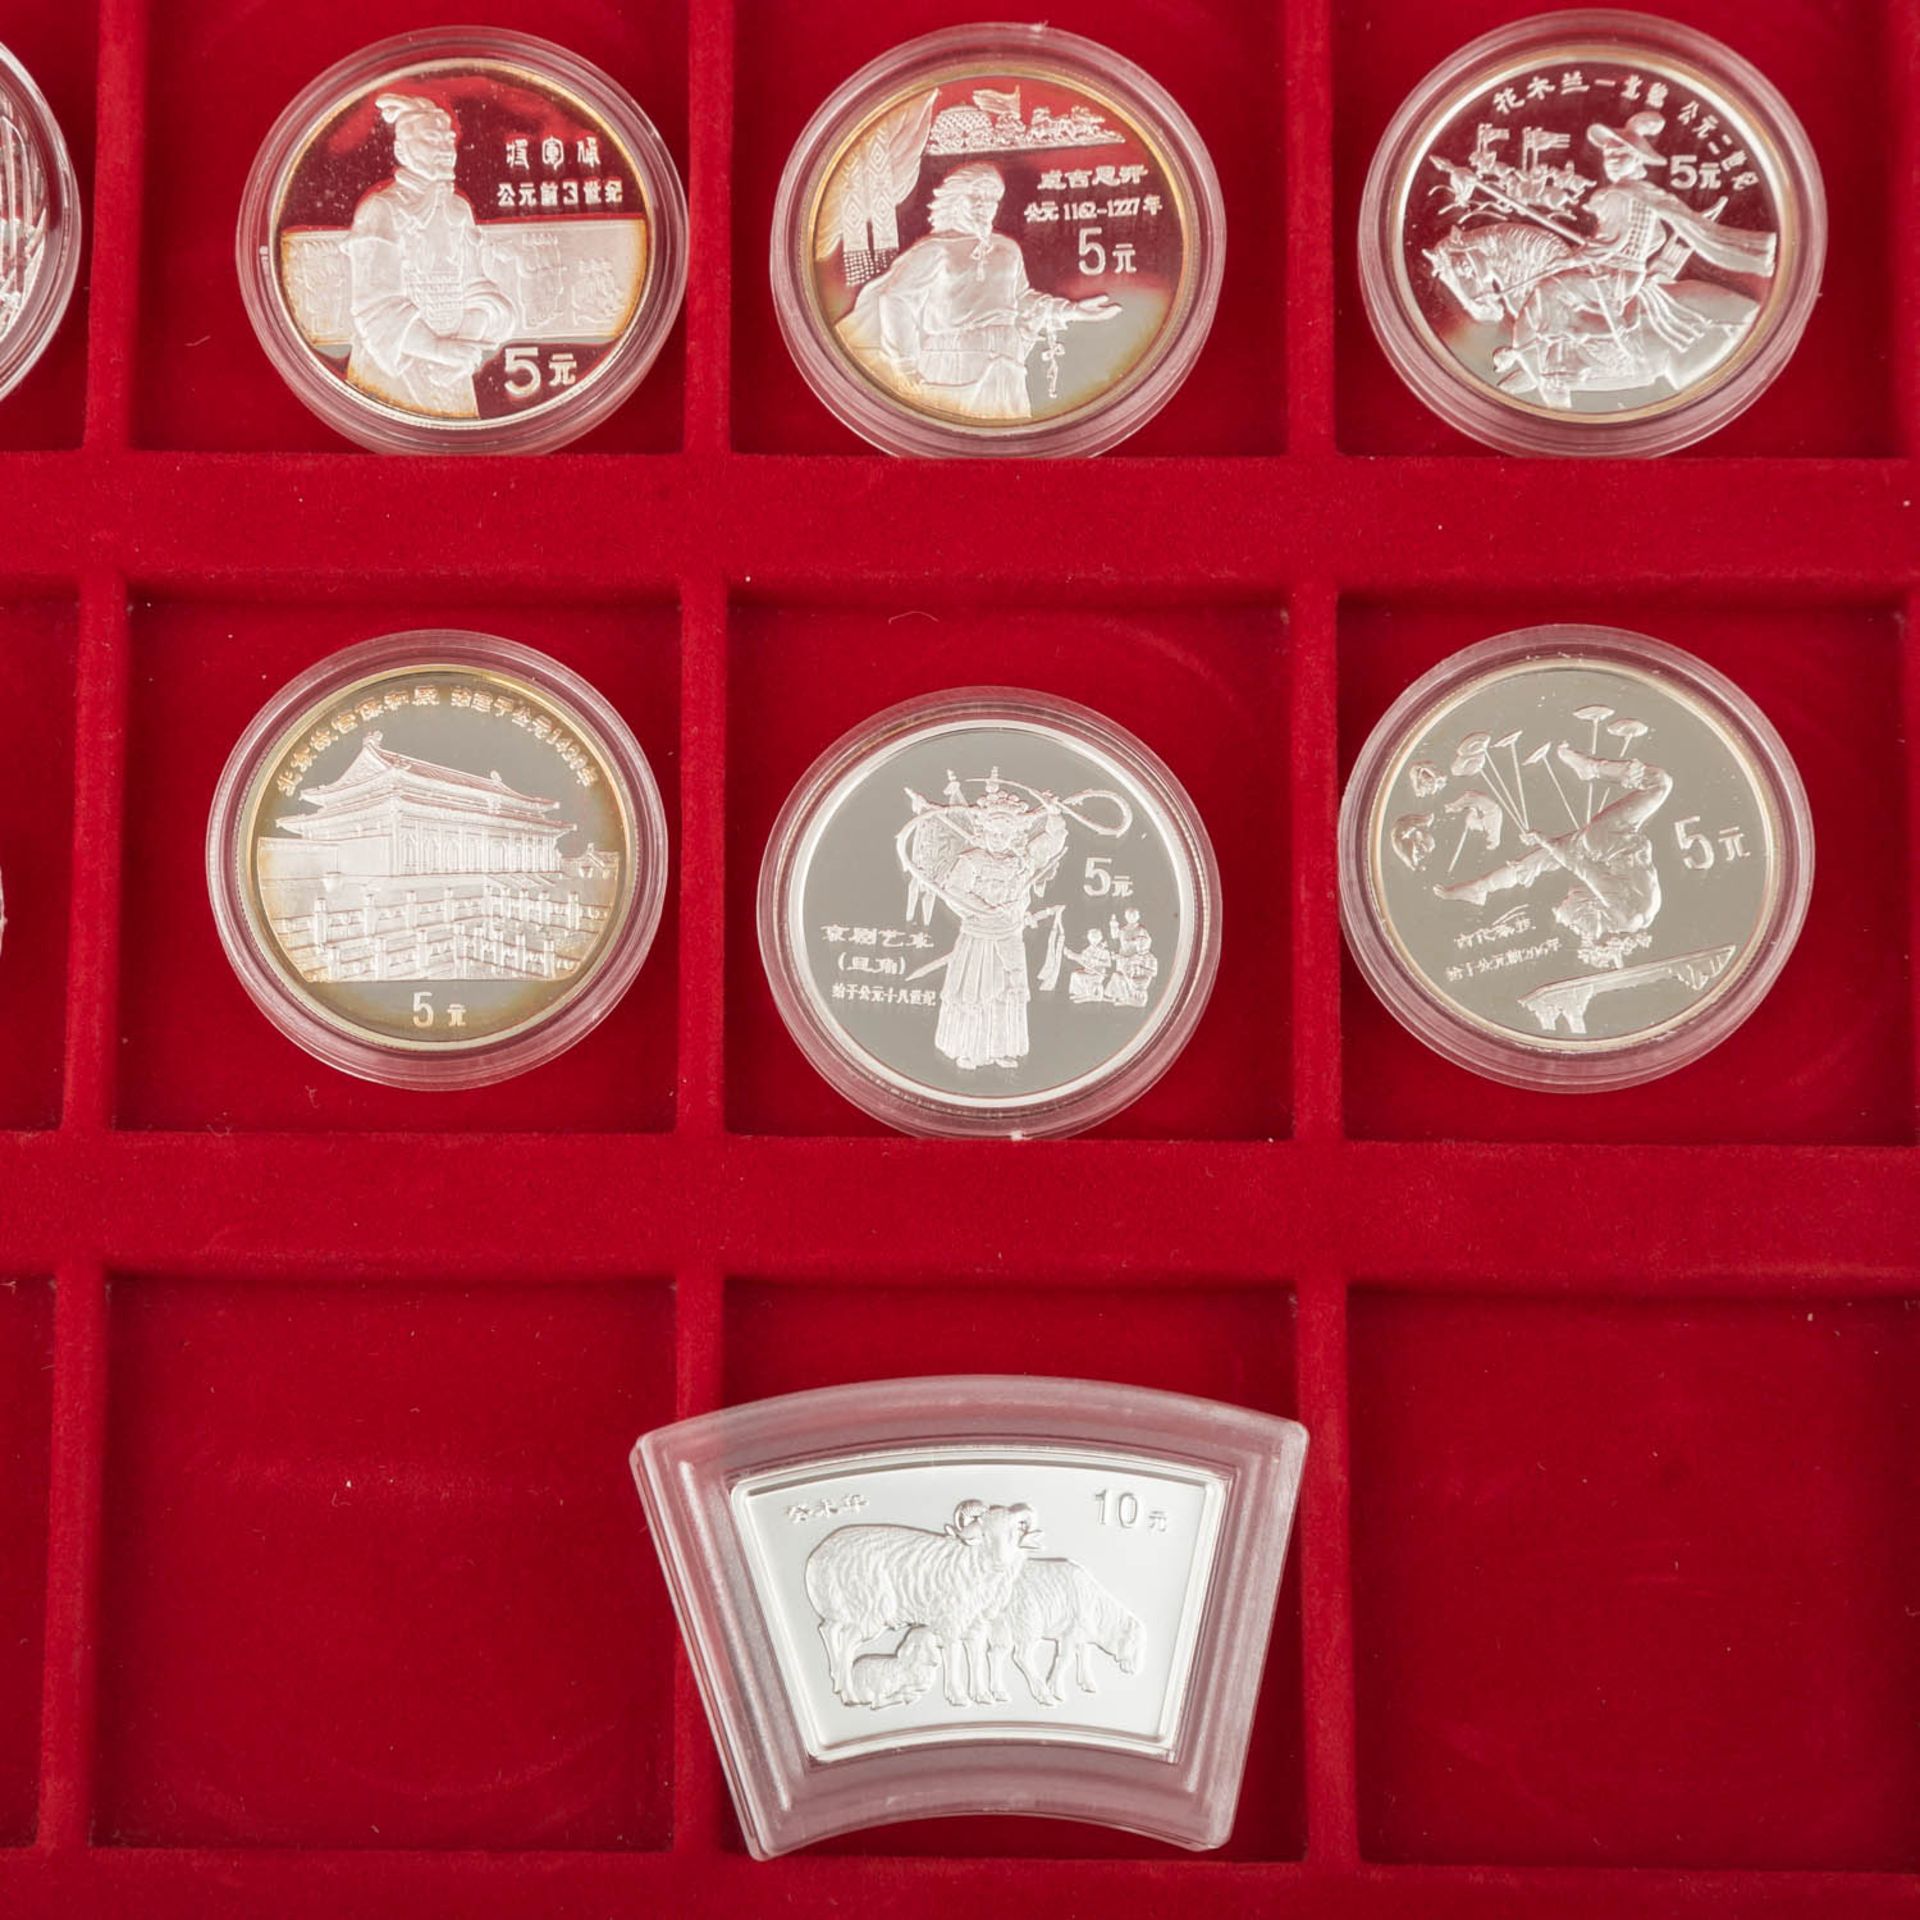 VR China - Sammlung von 22 Münzen,meist Gedenkprägungen Geschichte aus den 80er/90er Jahren ( - Bild 2 aus 3